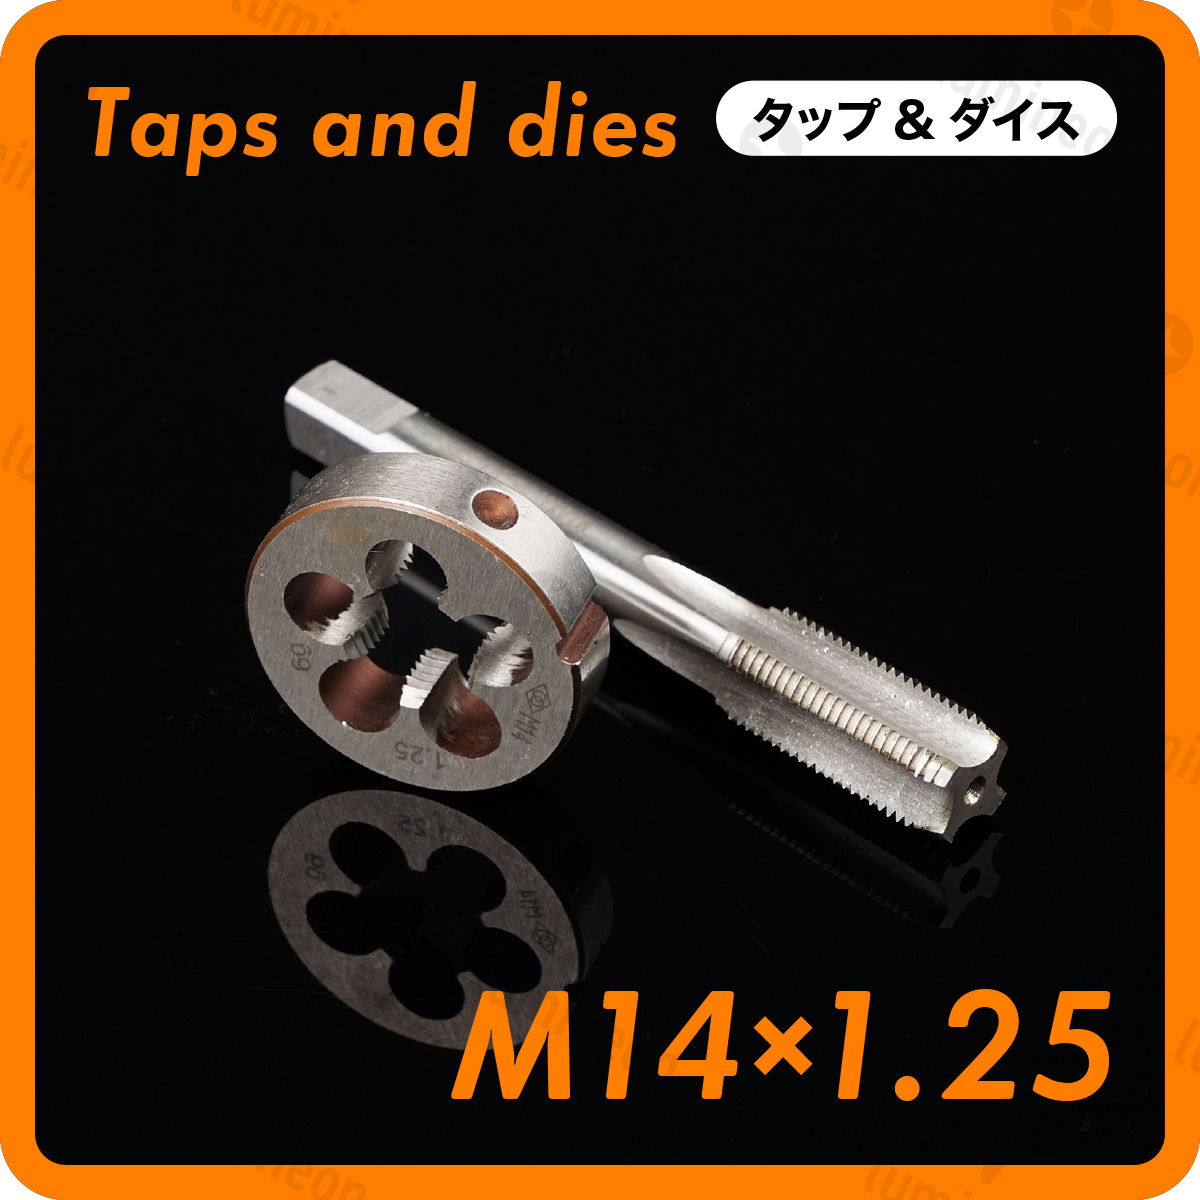 タップ 丸 ダイス M14×1.25 セット ツール 工具 セット ねじ 切り 機 ハンドル タップ DIY ネジ 切り 機 ネジ切機 手動 ねじきり g036f2 2